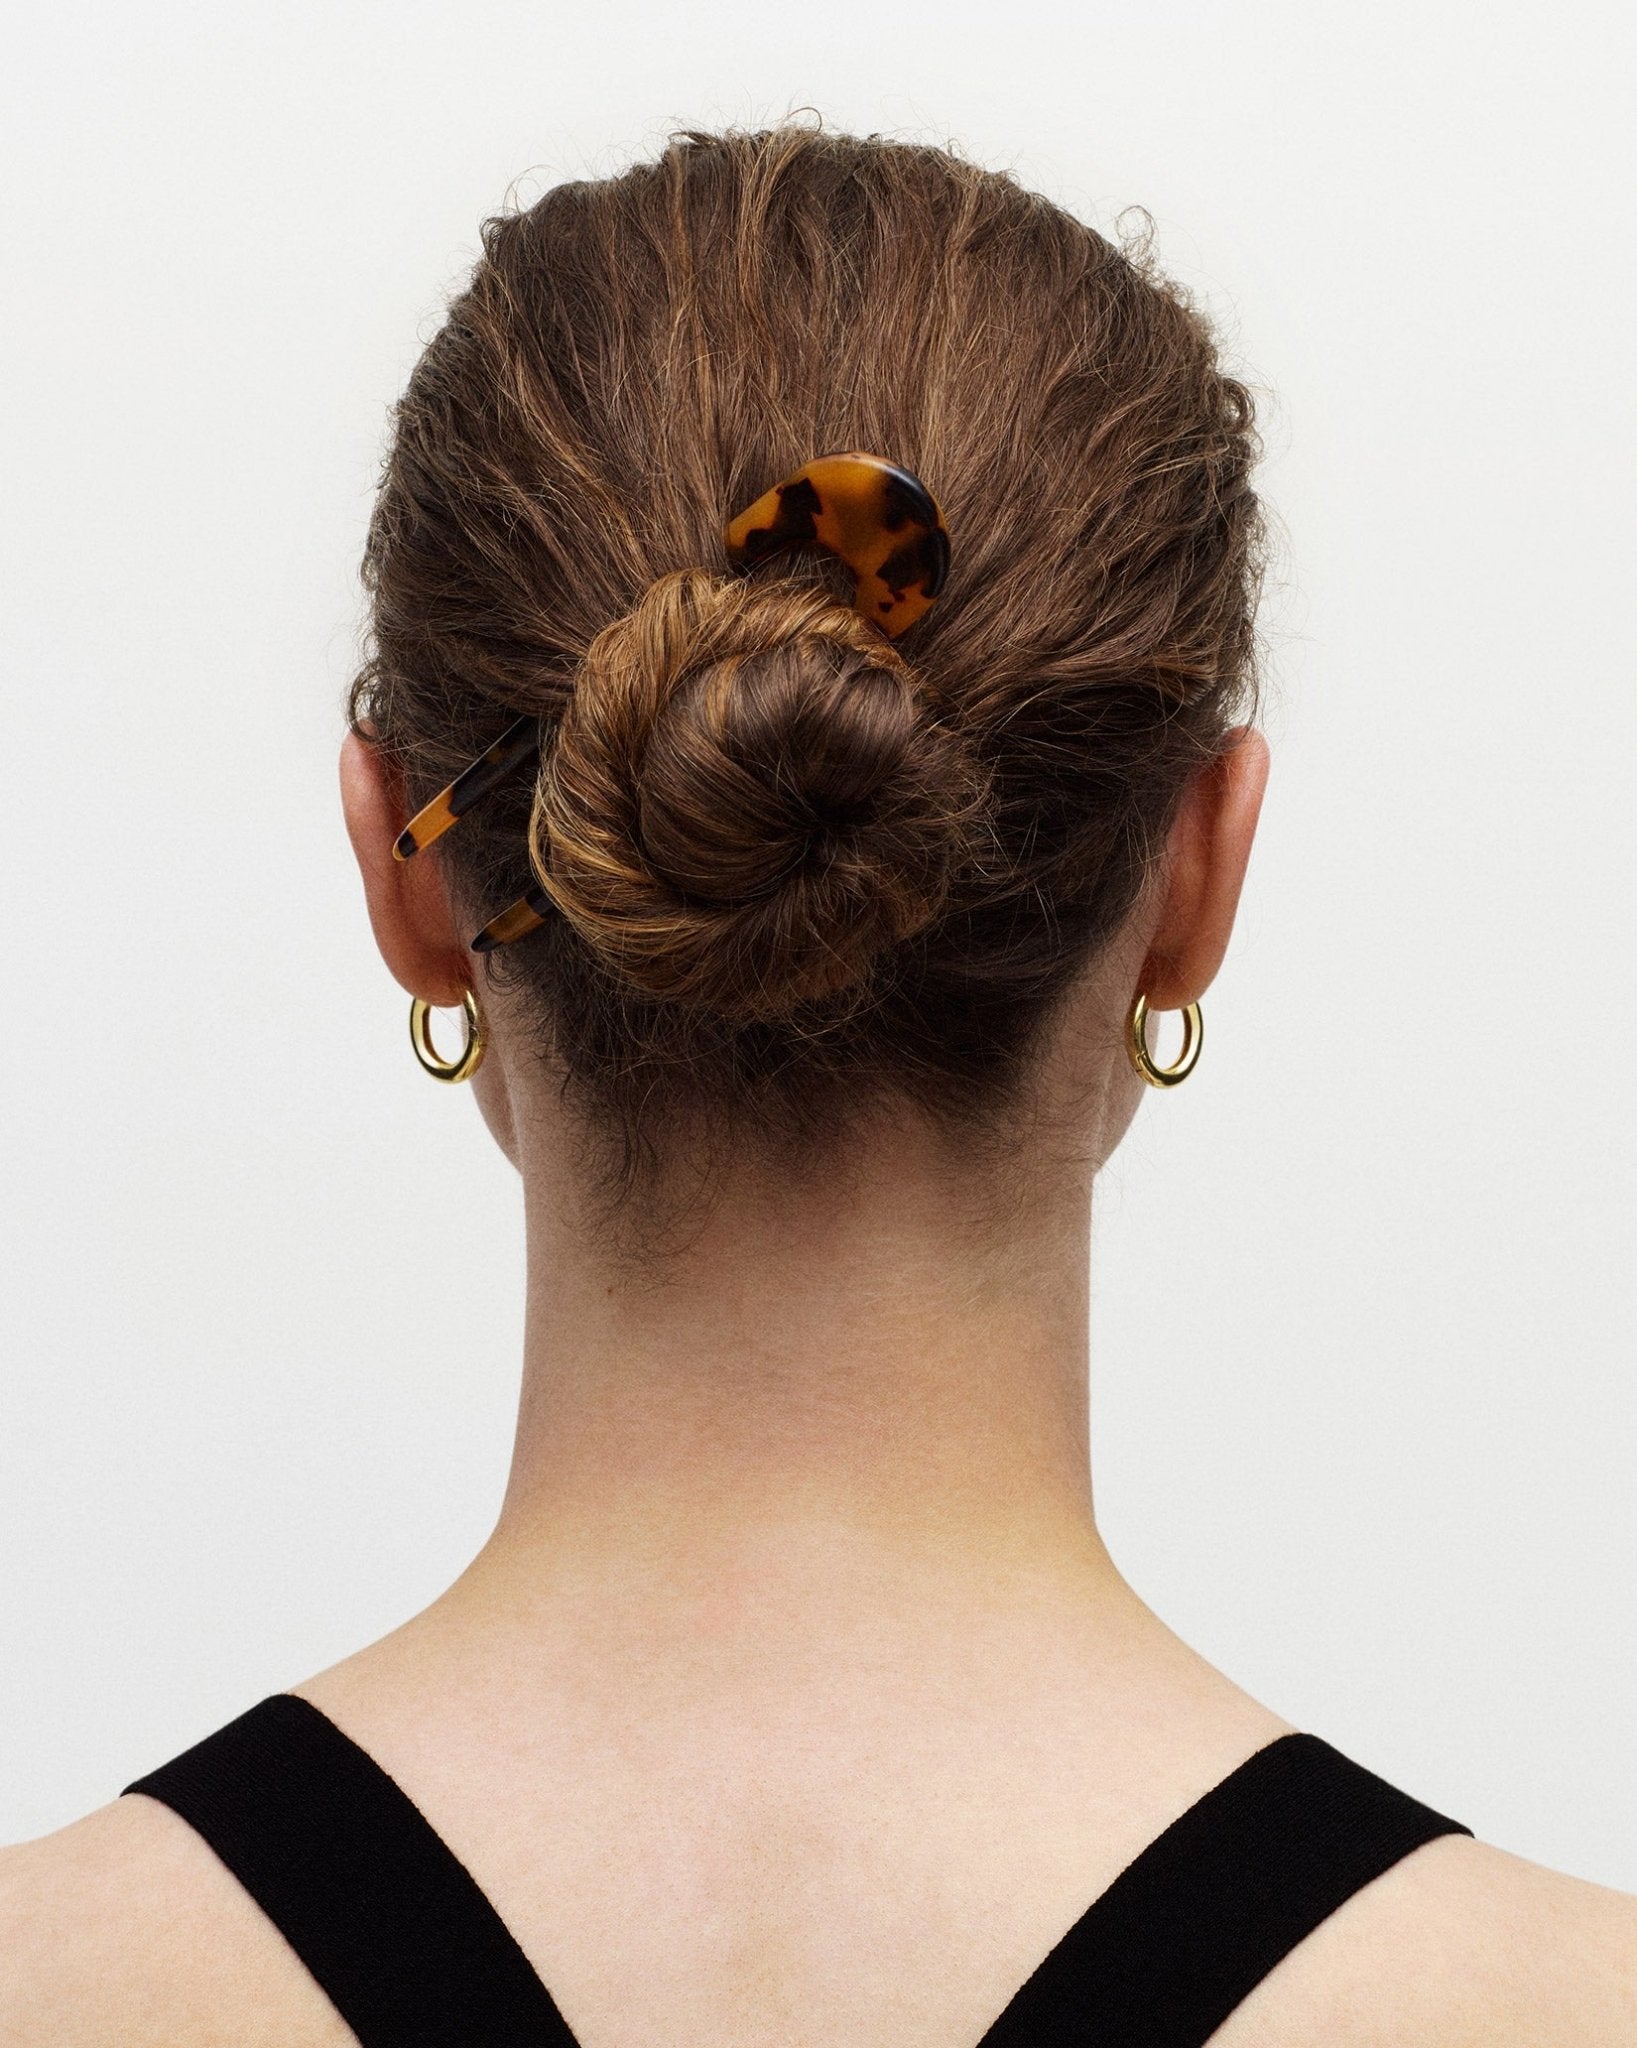 French Hair Pin in Stromanthe - MACHETE